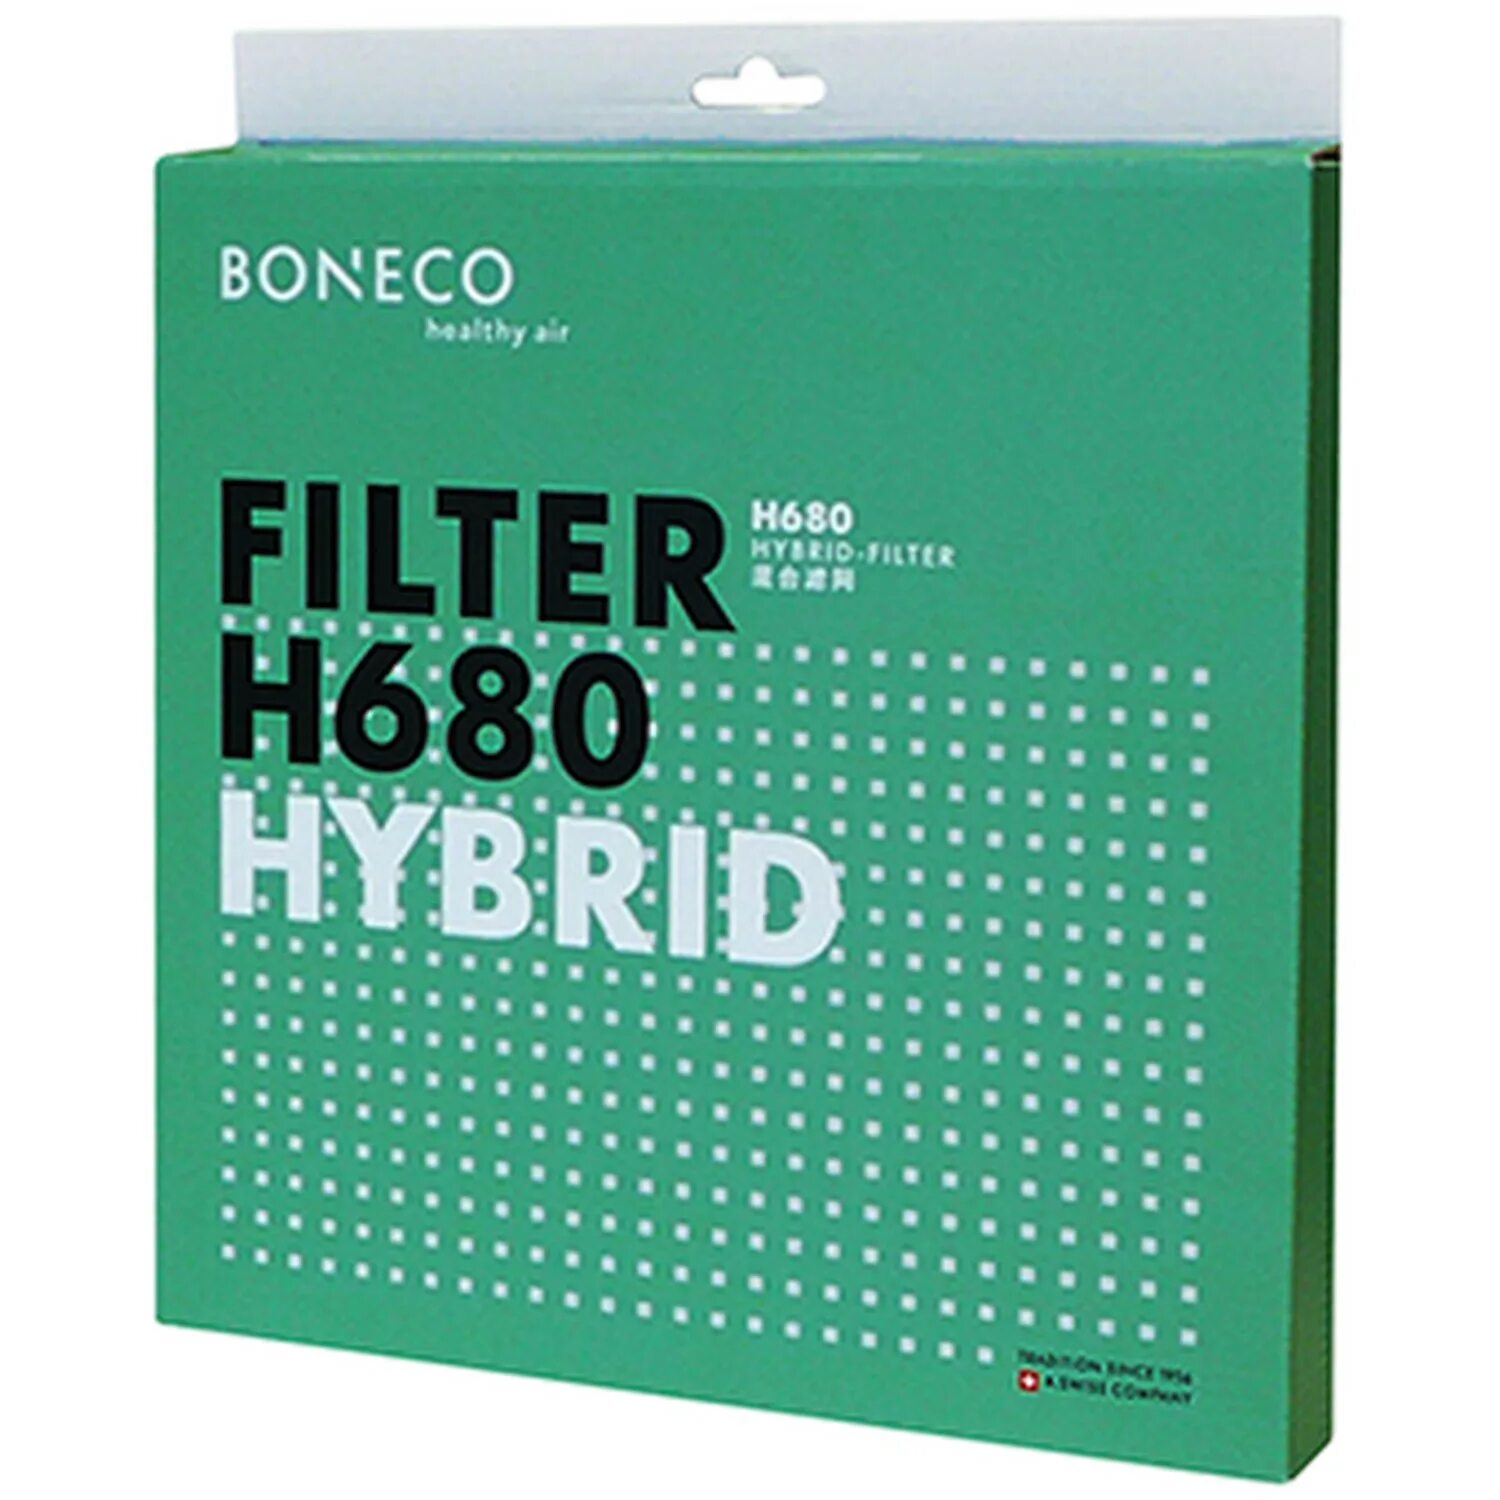 Boneco фильтры купить. Фильтр Hybrid для Boneco h680. Boneco Hybrid h680 фильтр увлажняющий фильтр. Фильтр губка для Boneco h680. Boneco 680.